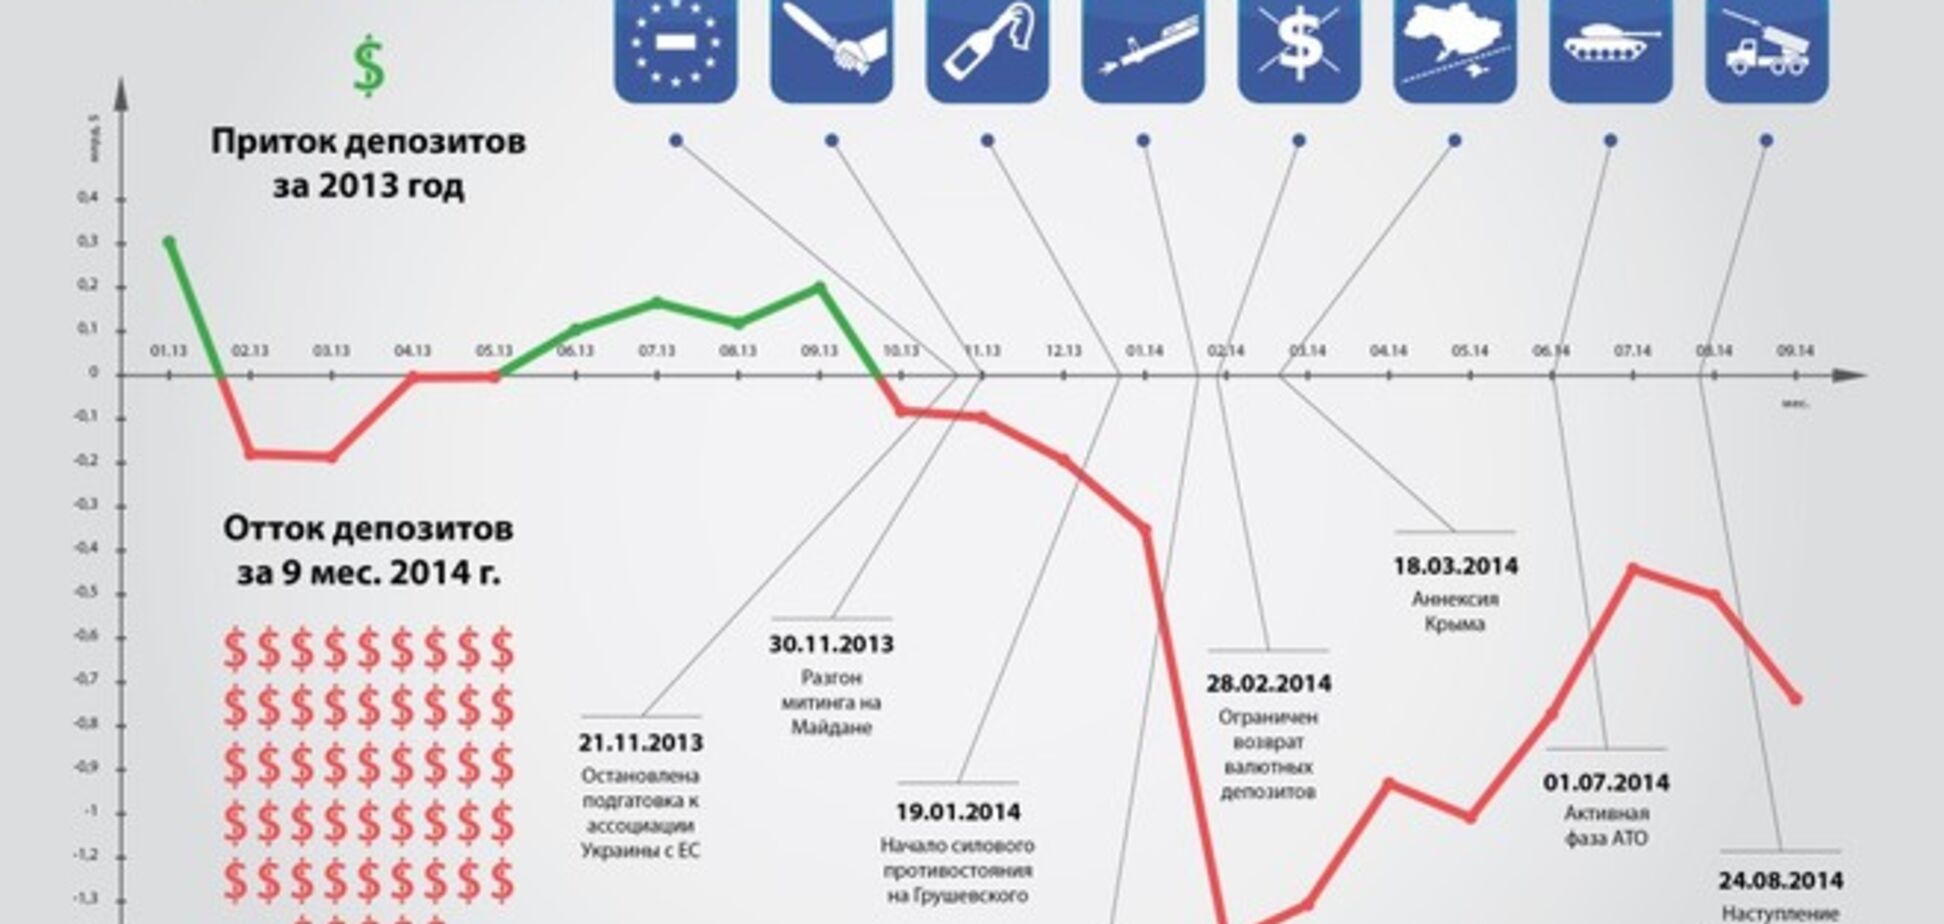 Бегство валютных вкладов из украинских банков: опубликована инфографика